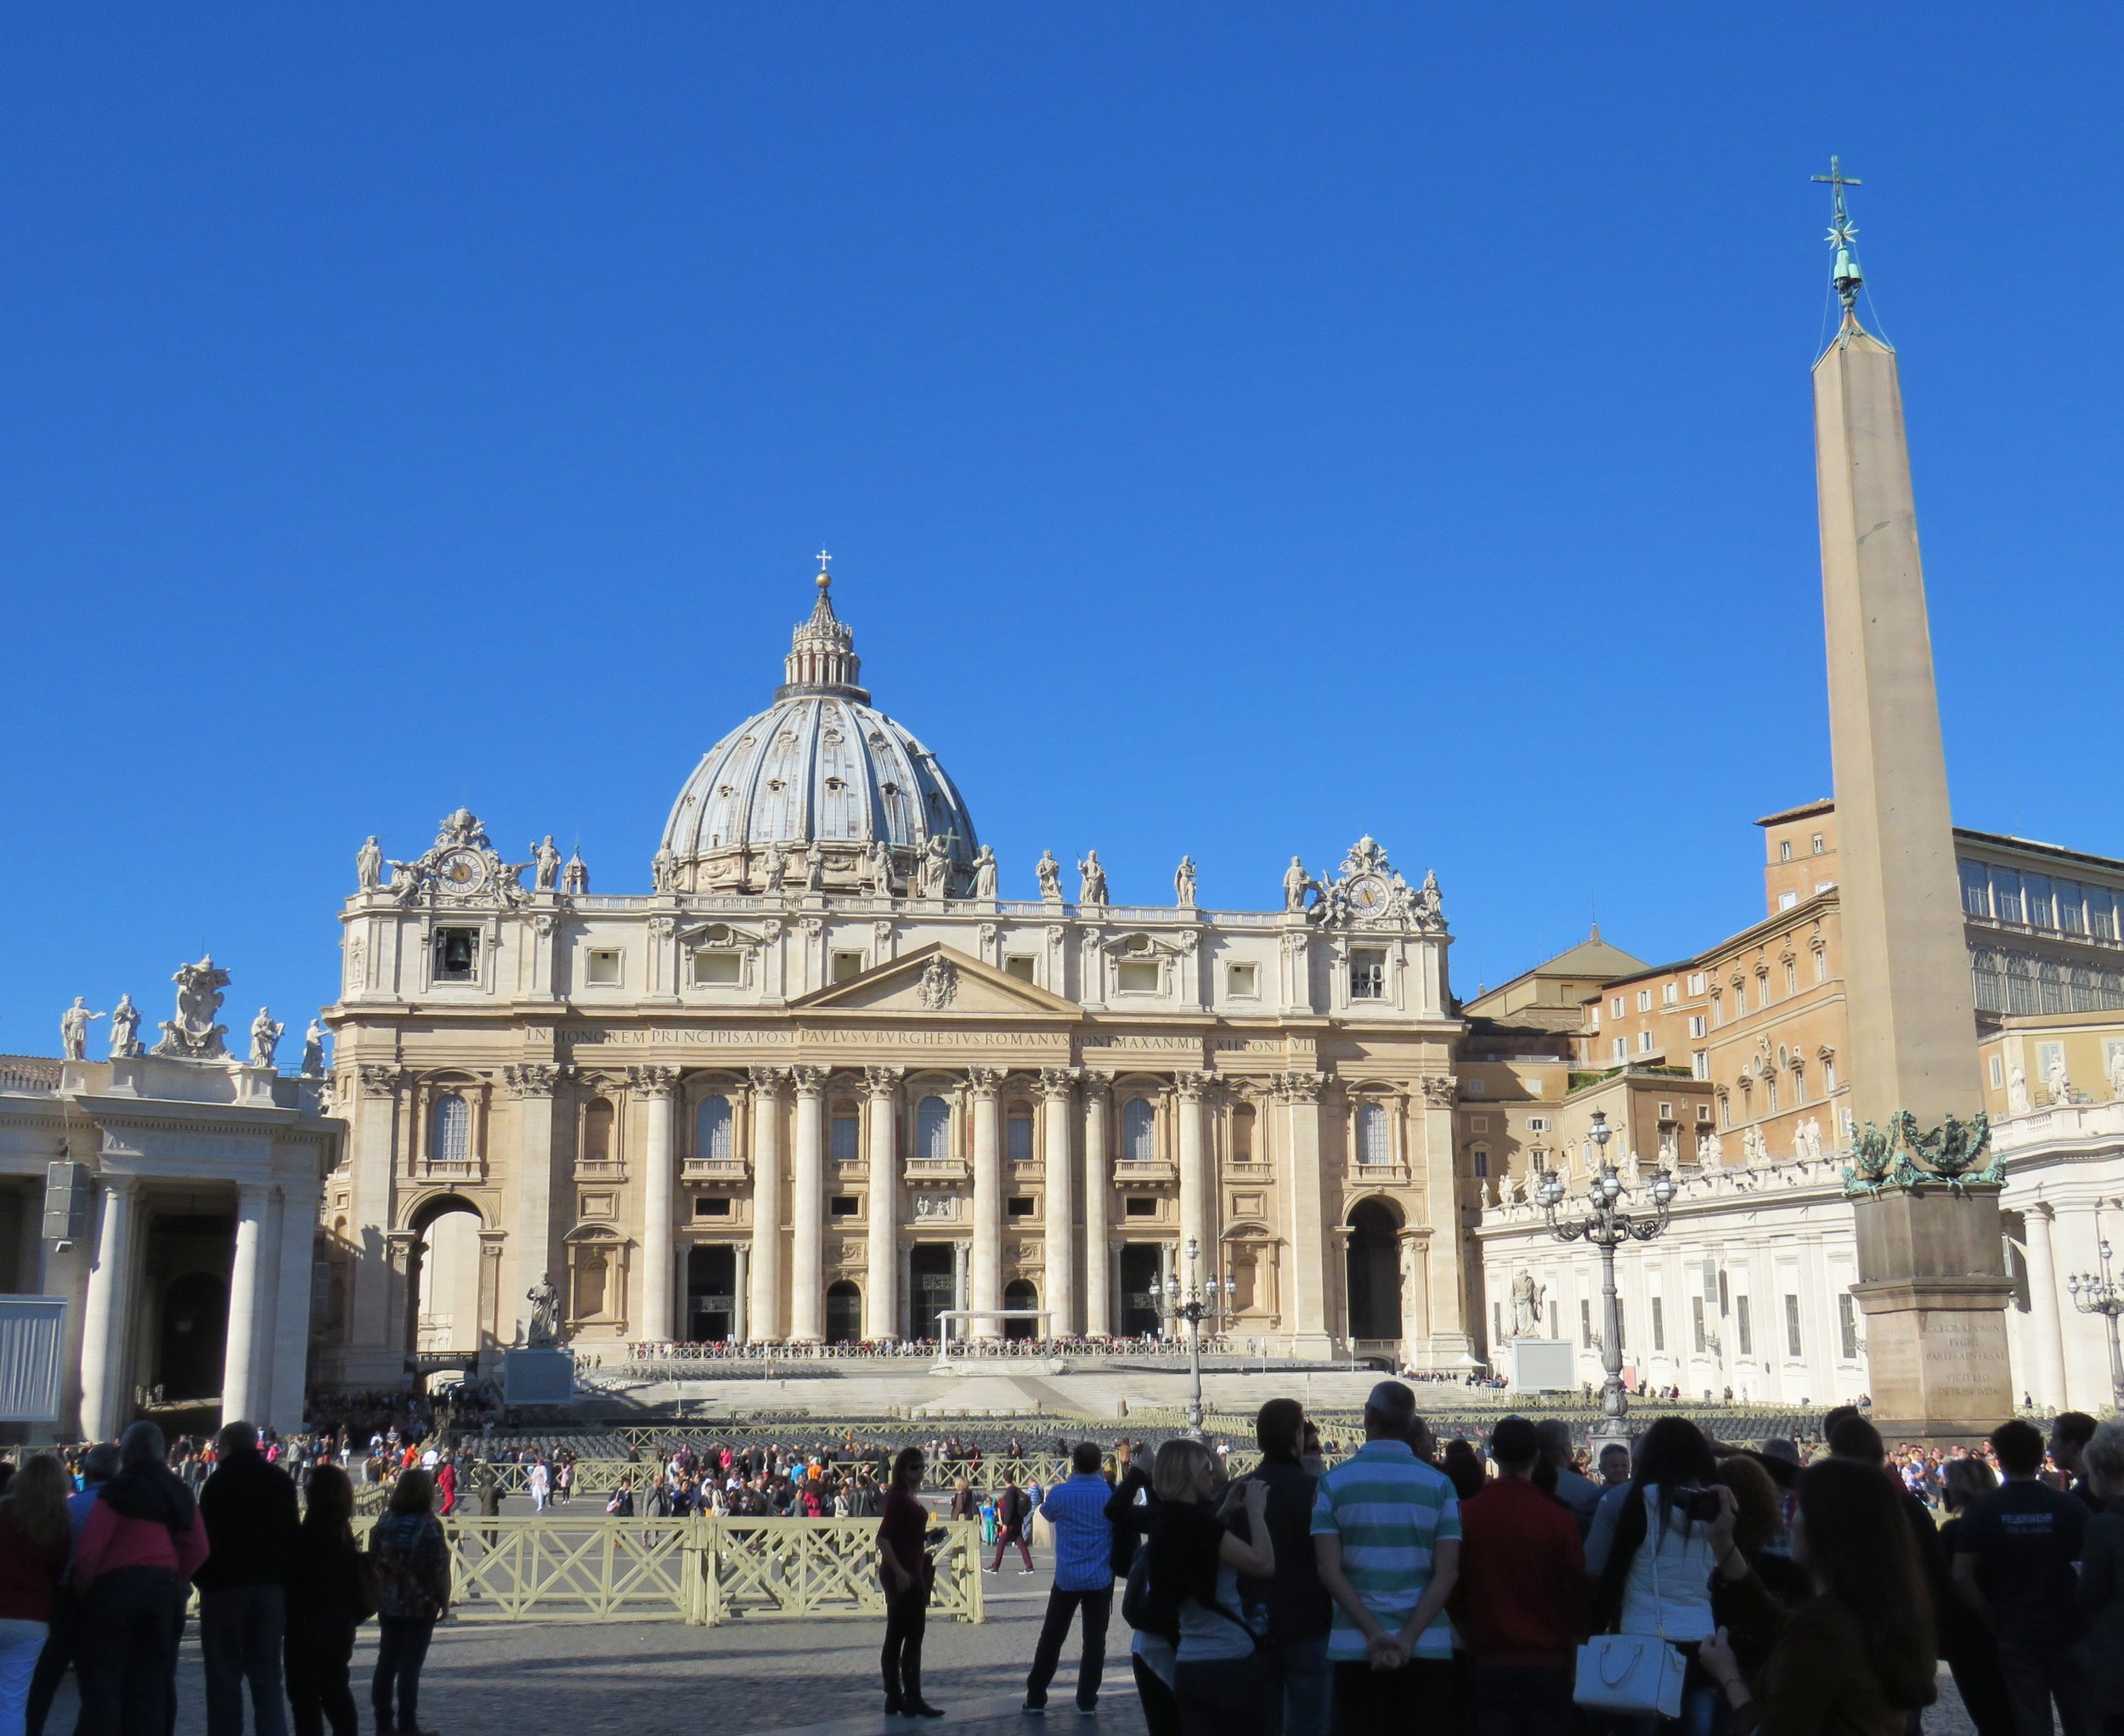 St. Peter's Basilica - Vatican City